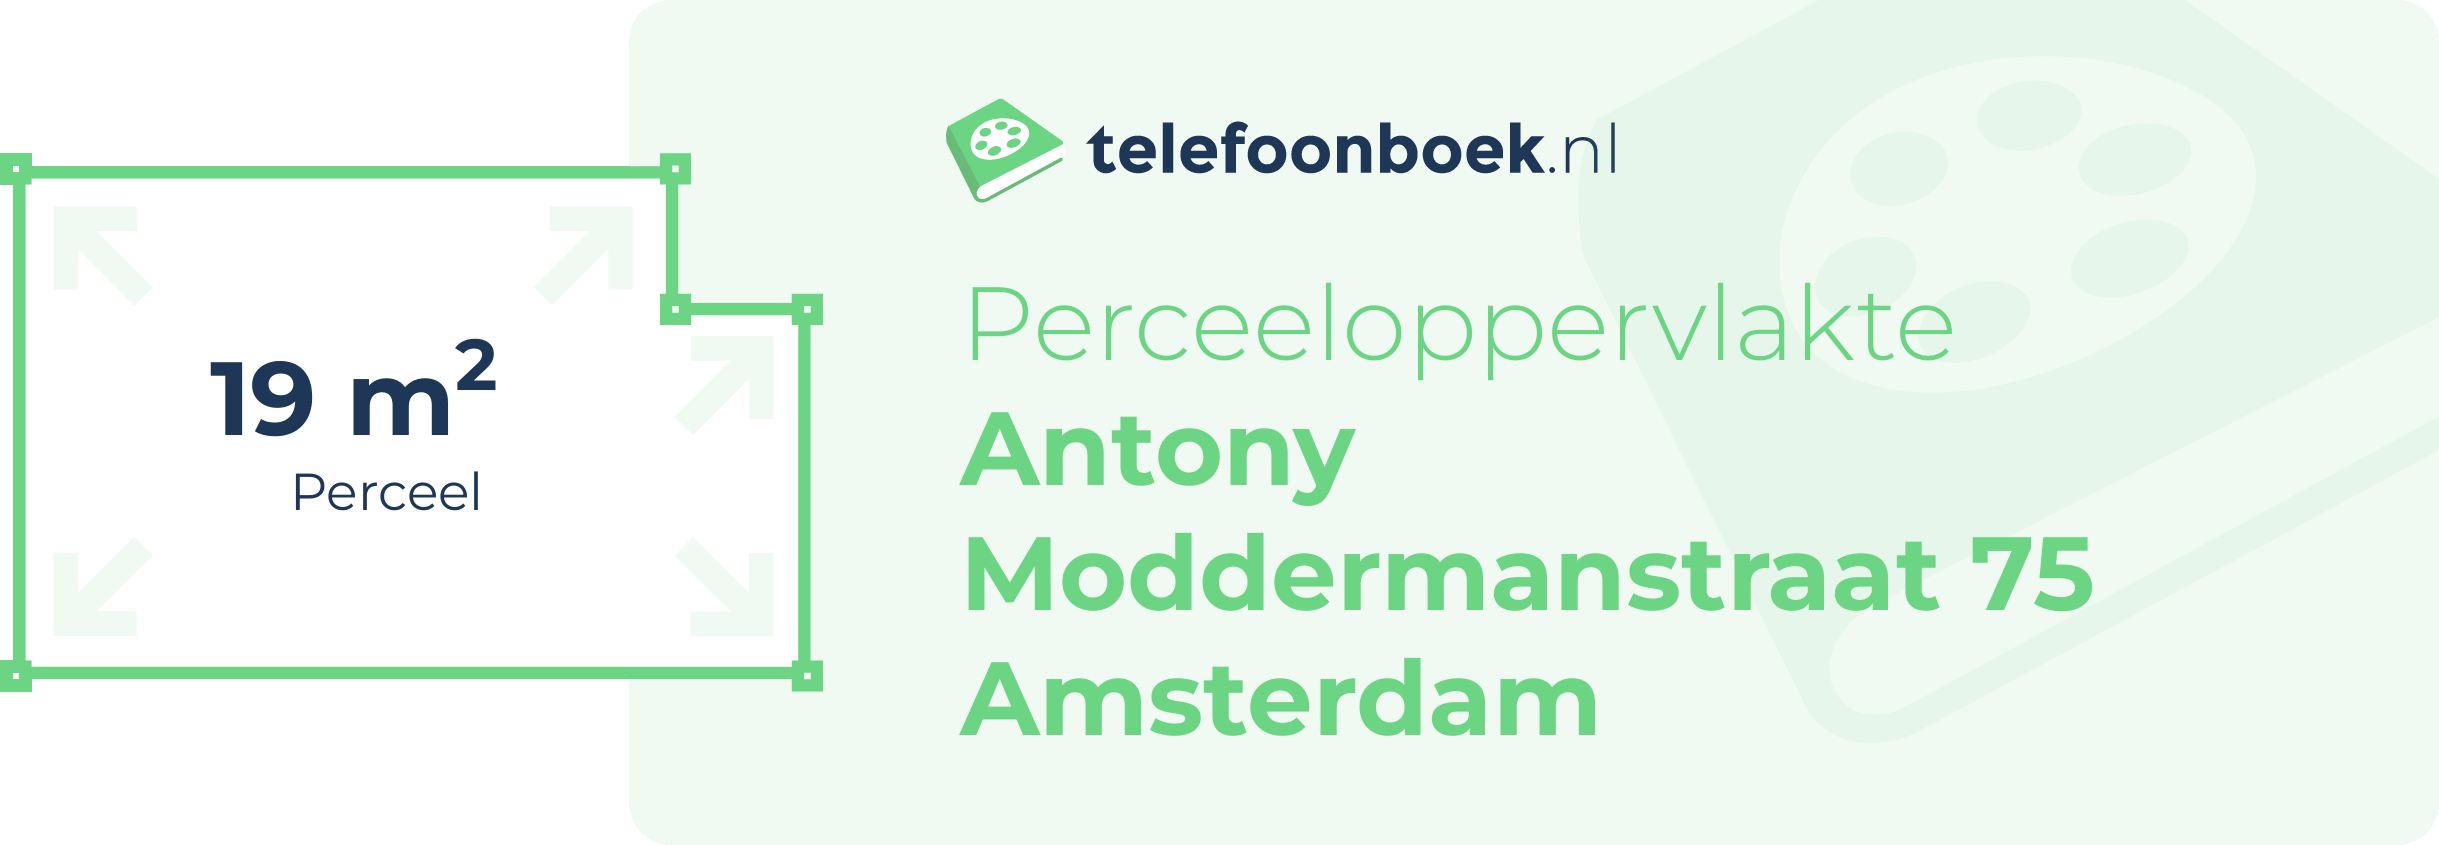 Perceeloppervlakte Antony Moddermanstraat 75 Amsterdam